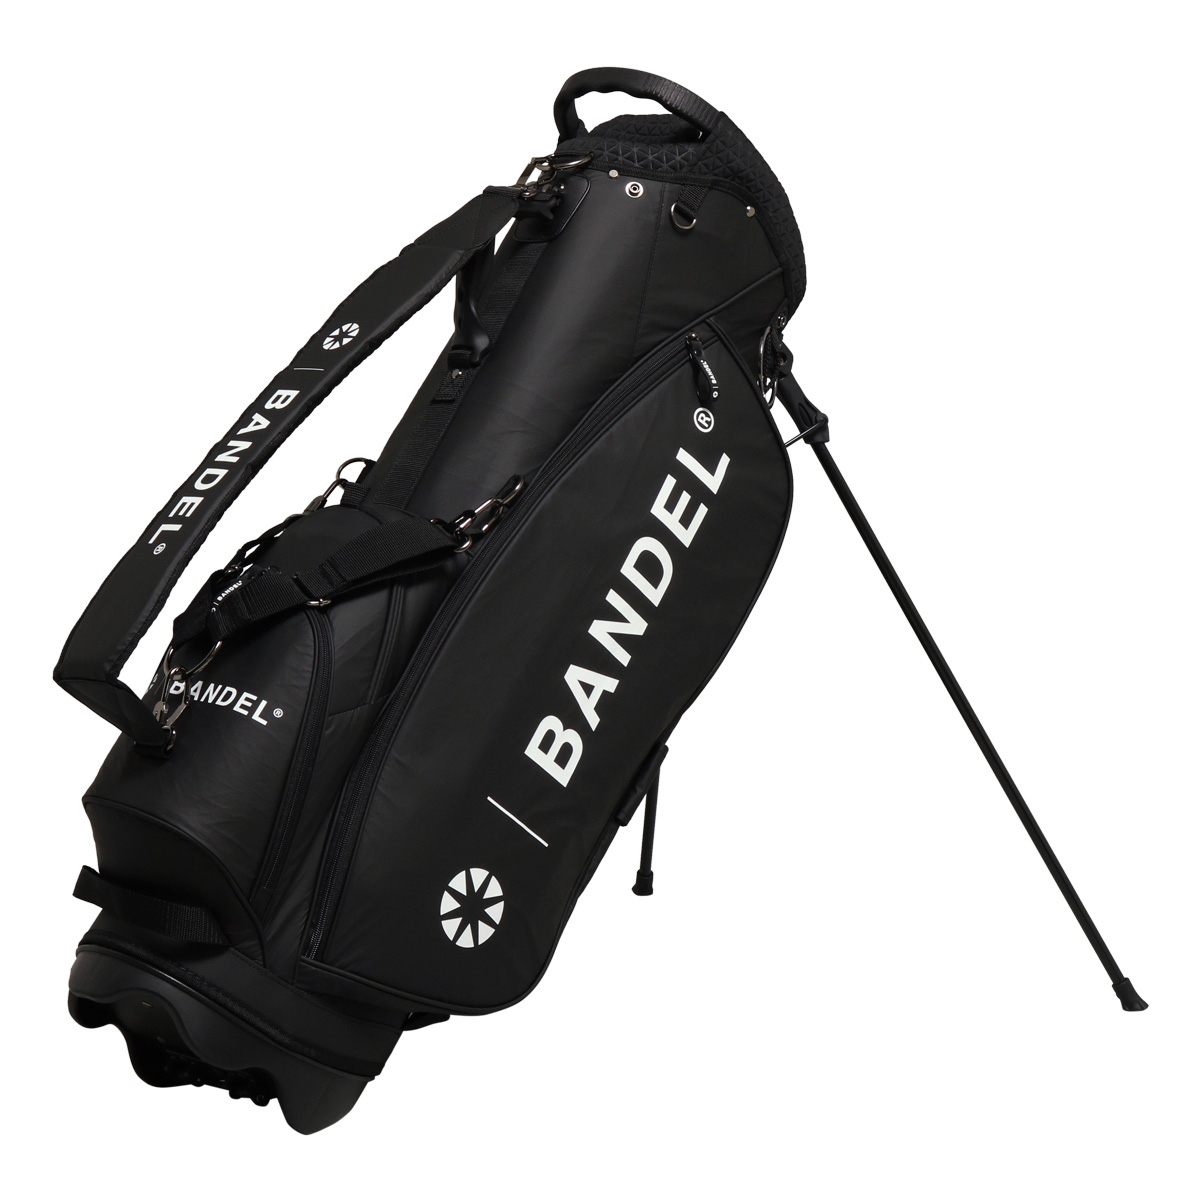 バンデル ゴルフ キャディバッグ スタンド式 9.5型 46インチ対応 メンズ BGI-3SCB BANDEL CRUMPLE STAND CADDY  BAG ゴルフバッグ